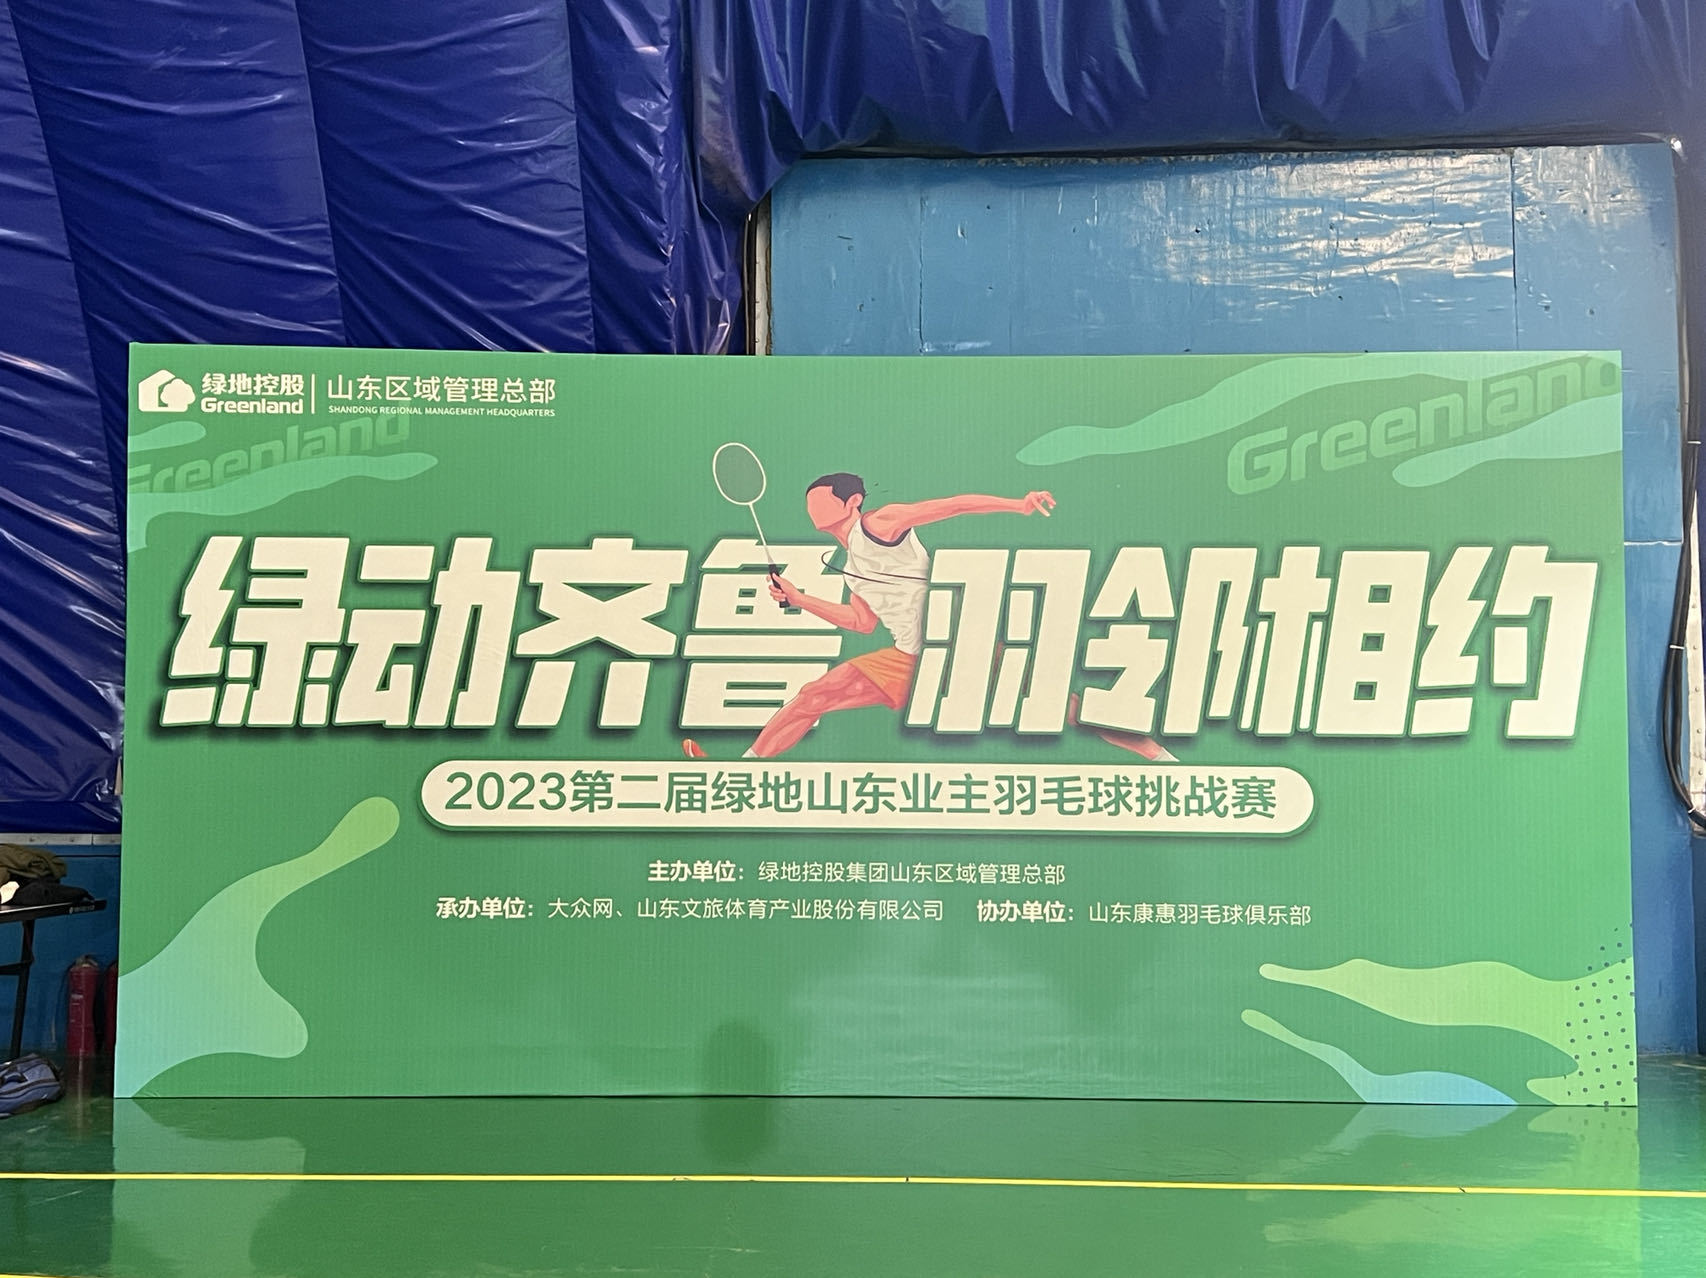 2023第二届绿地山东业主羽毛球挑战赛精彩落幕